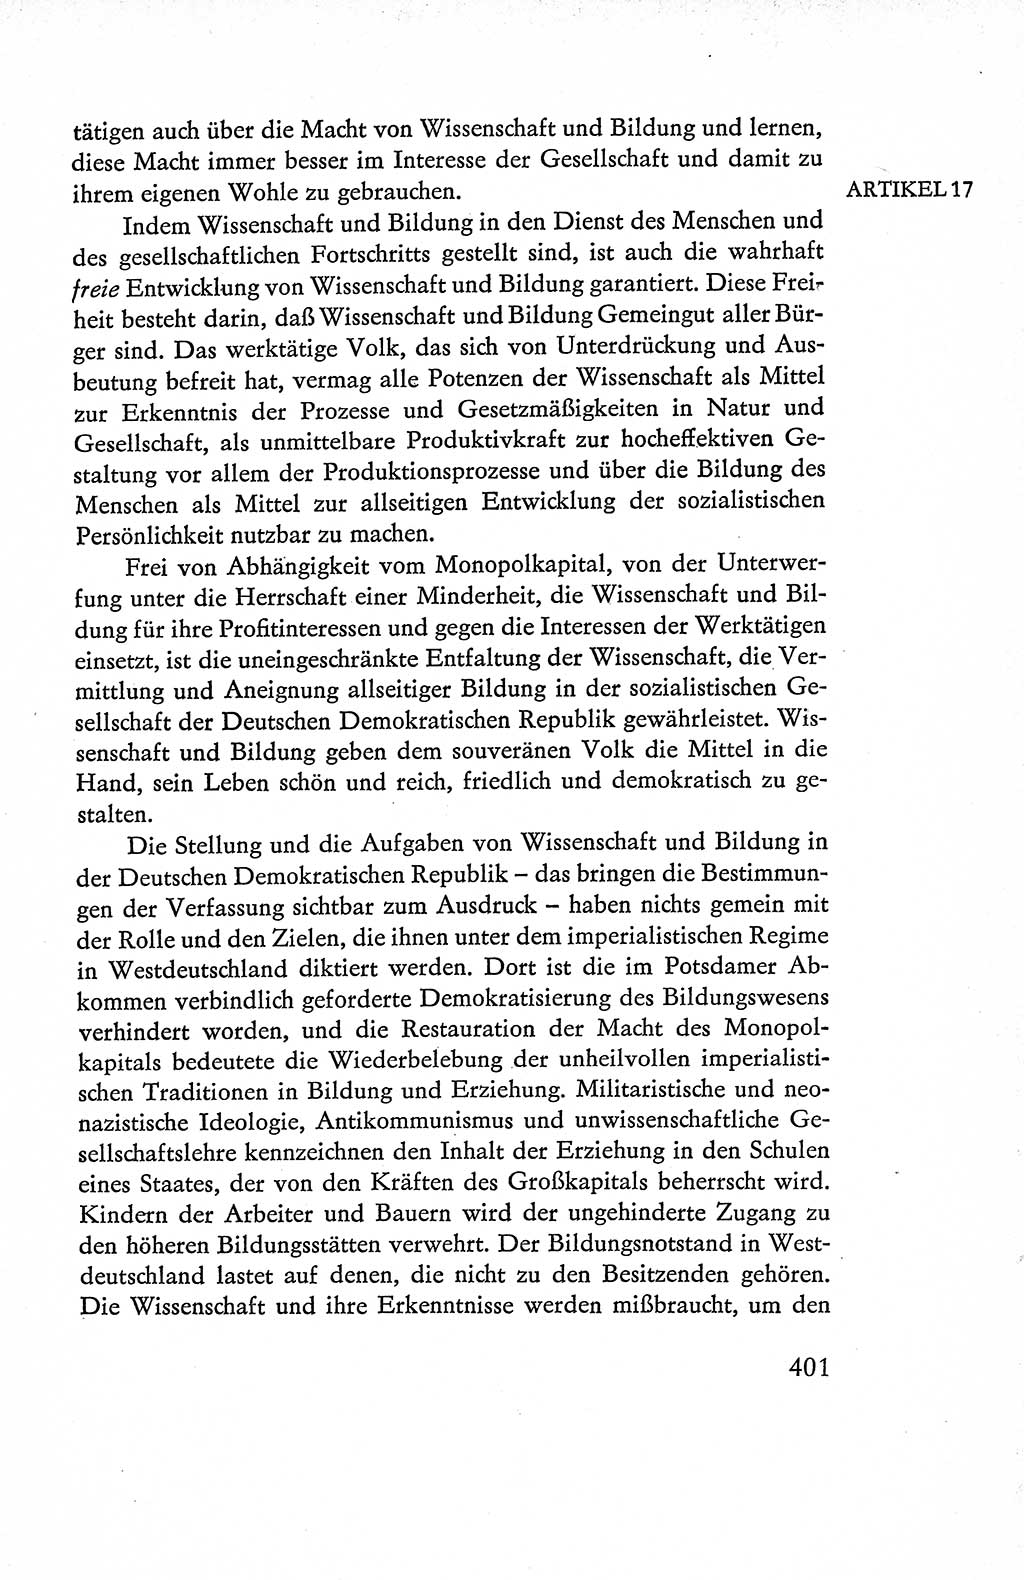 Verfassung der Deutschen Demokratischen Republik (DDR), Dokumente, Kommentar 1969, Band 1, Seite 401 (Verf. DDR Dok. Komm. 1969, Bd. 1, S. 401)